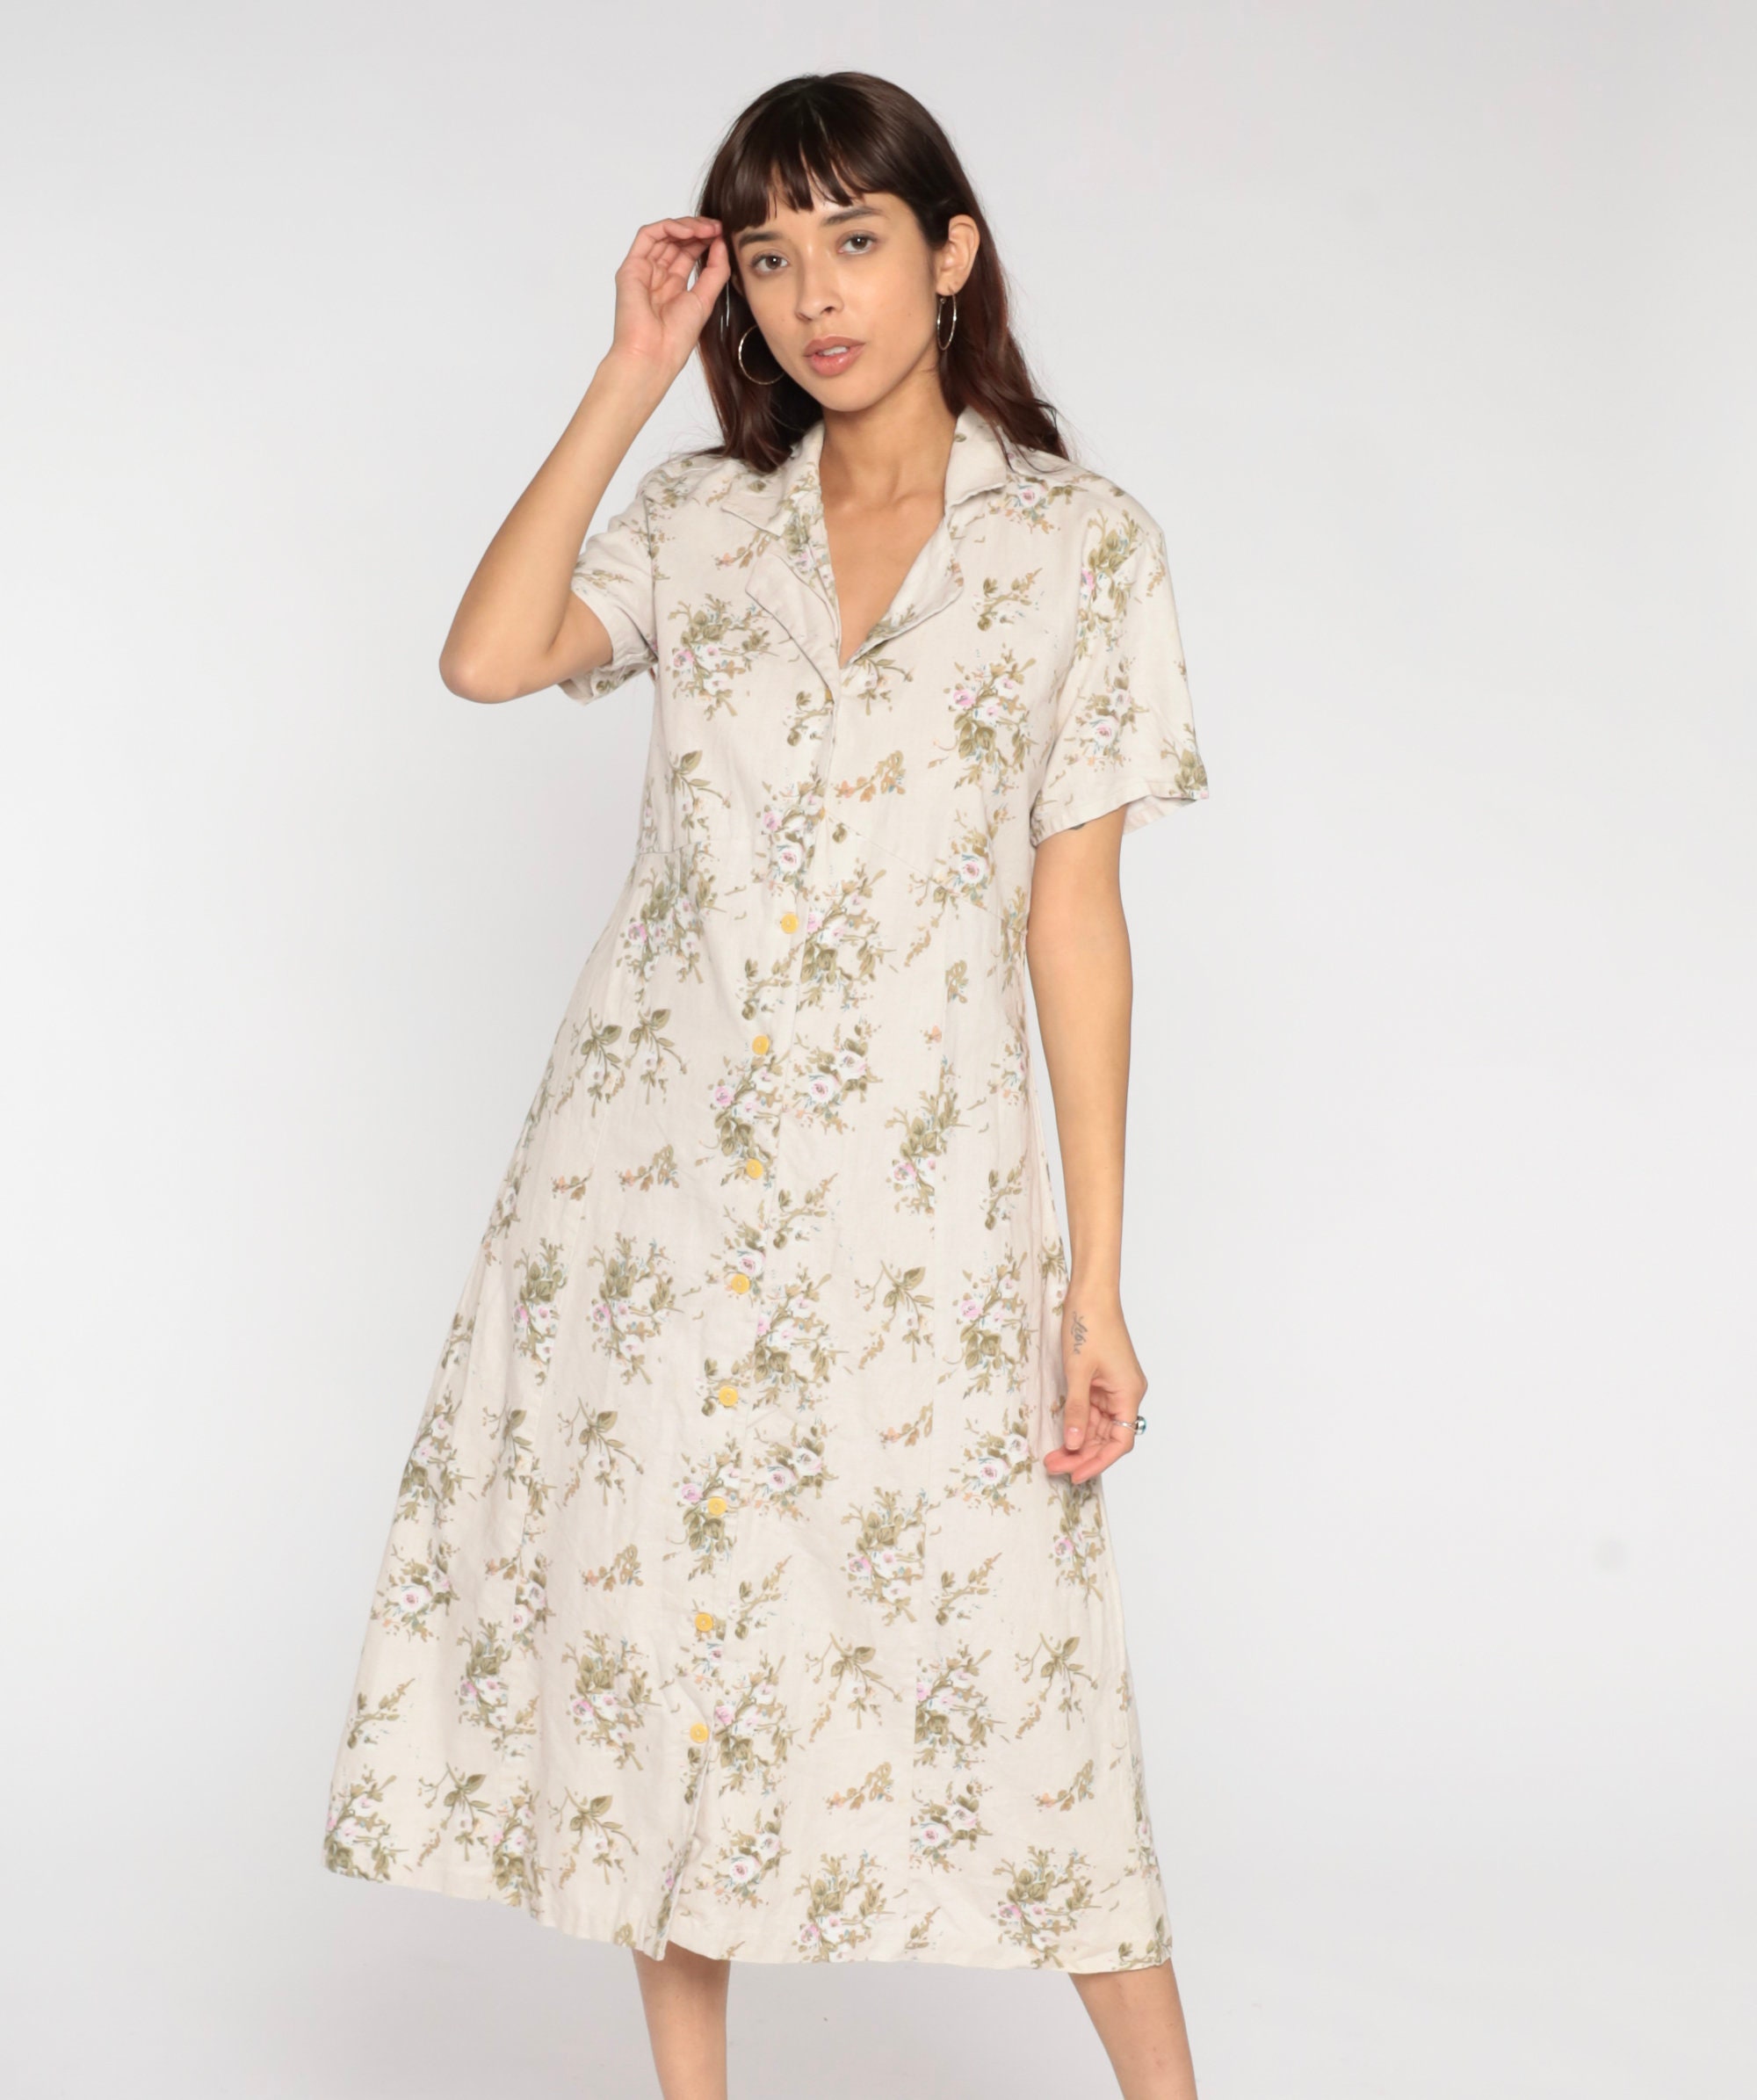 Floral Midi Dress 90s Beige Linen Cotton Dress Button Up Boho ...